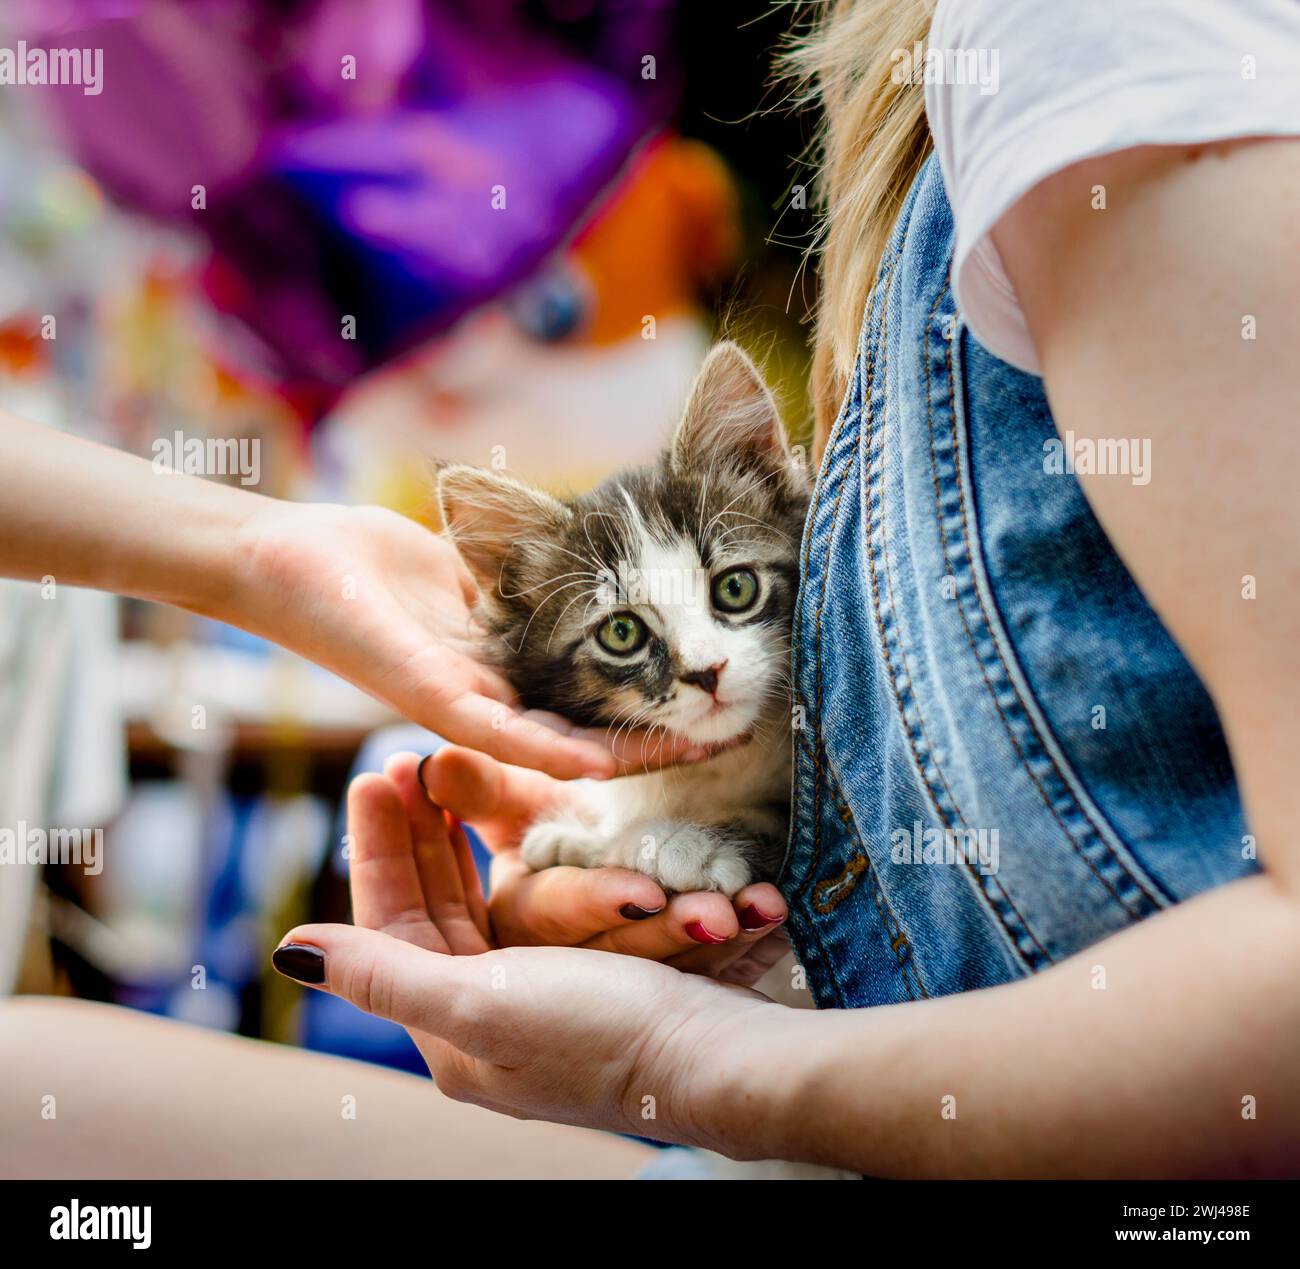 Die Kinderhand streichelt ein kleines Tabby-Kätzchen sitzend Stockfoto